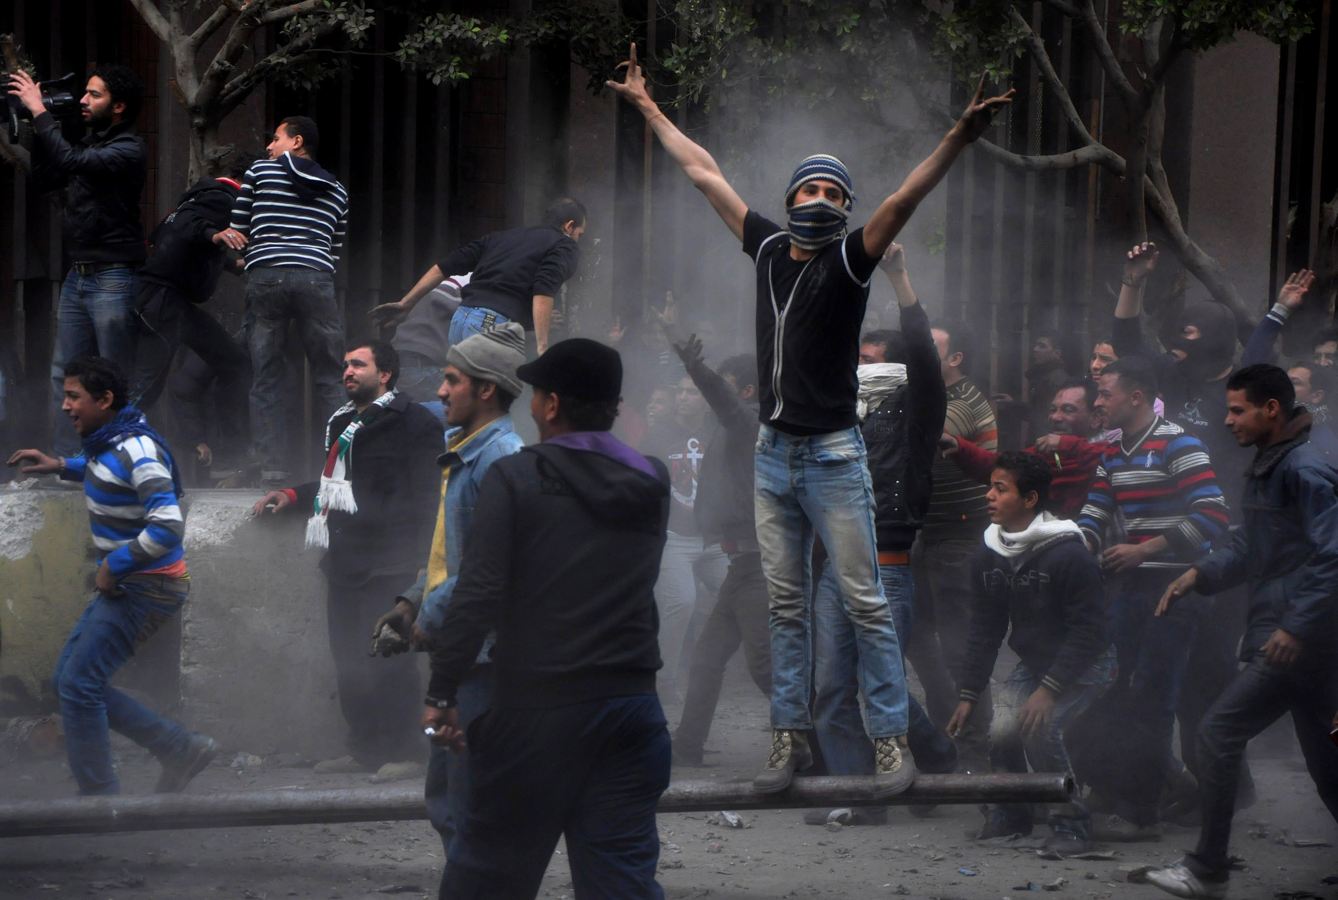 埃及足球骚乱案引冲突致死32人 纪念日示威继续18名囚犯越狱